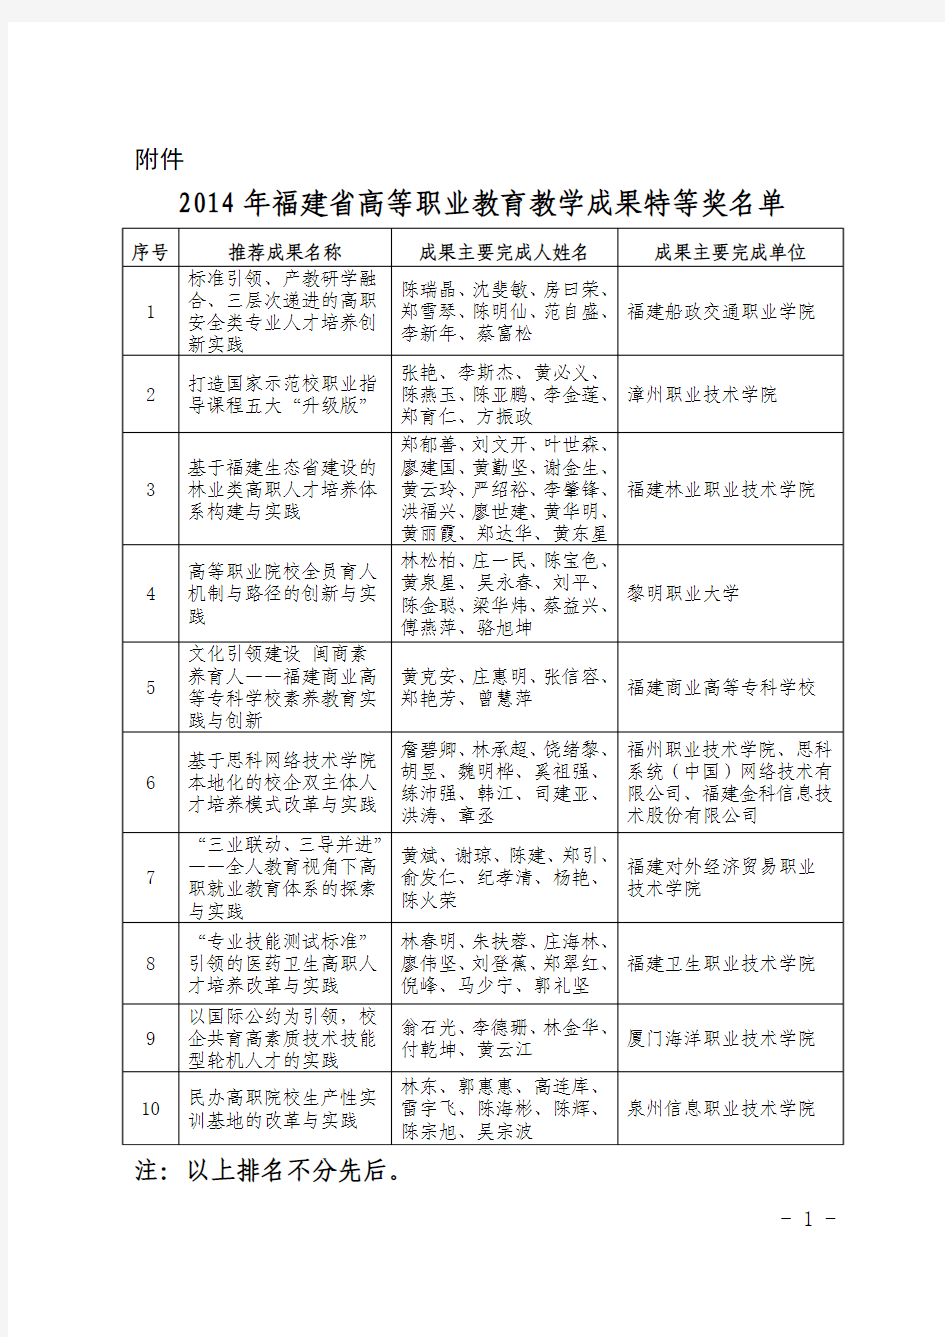 2014年福建省高等职业教育教学成果奖项目名单